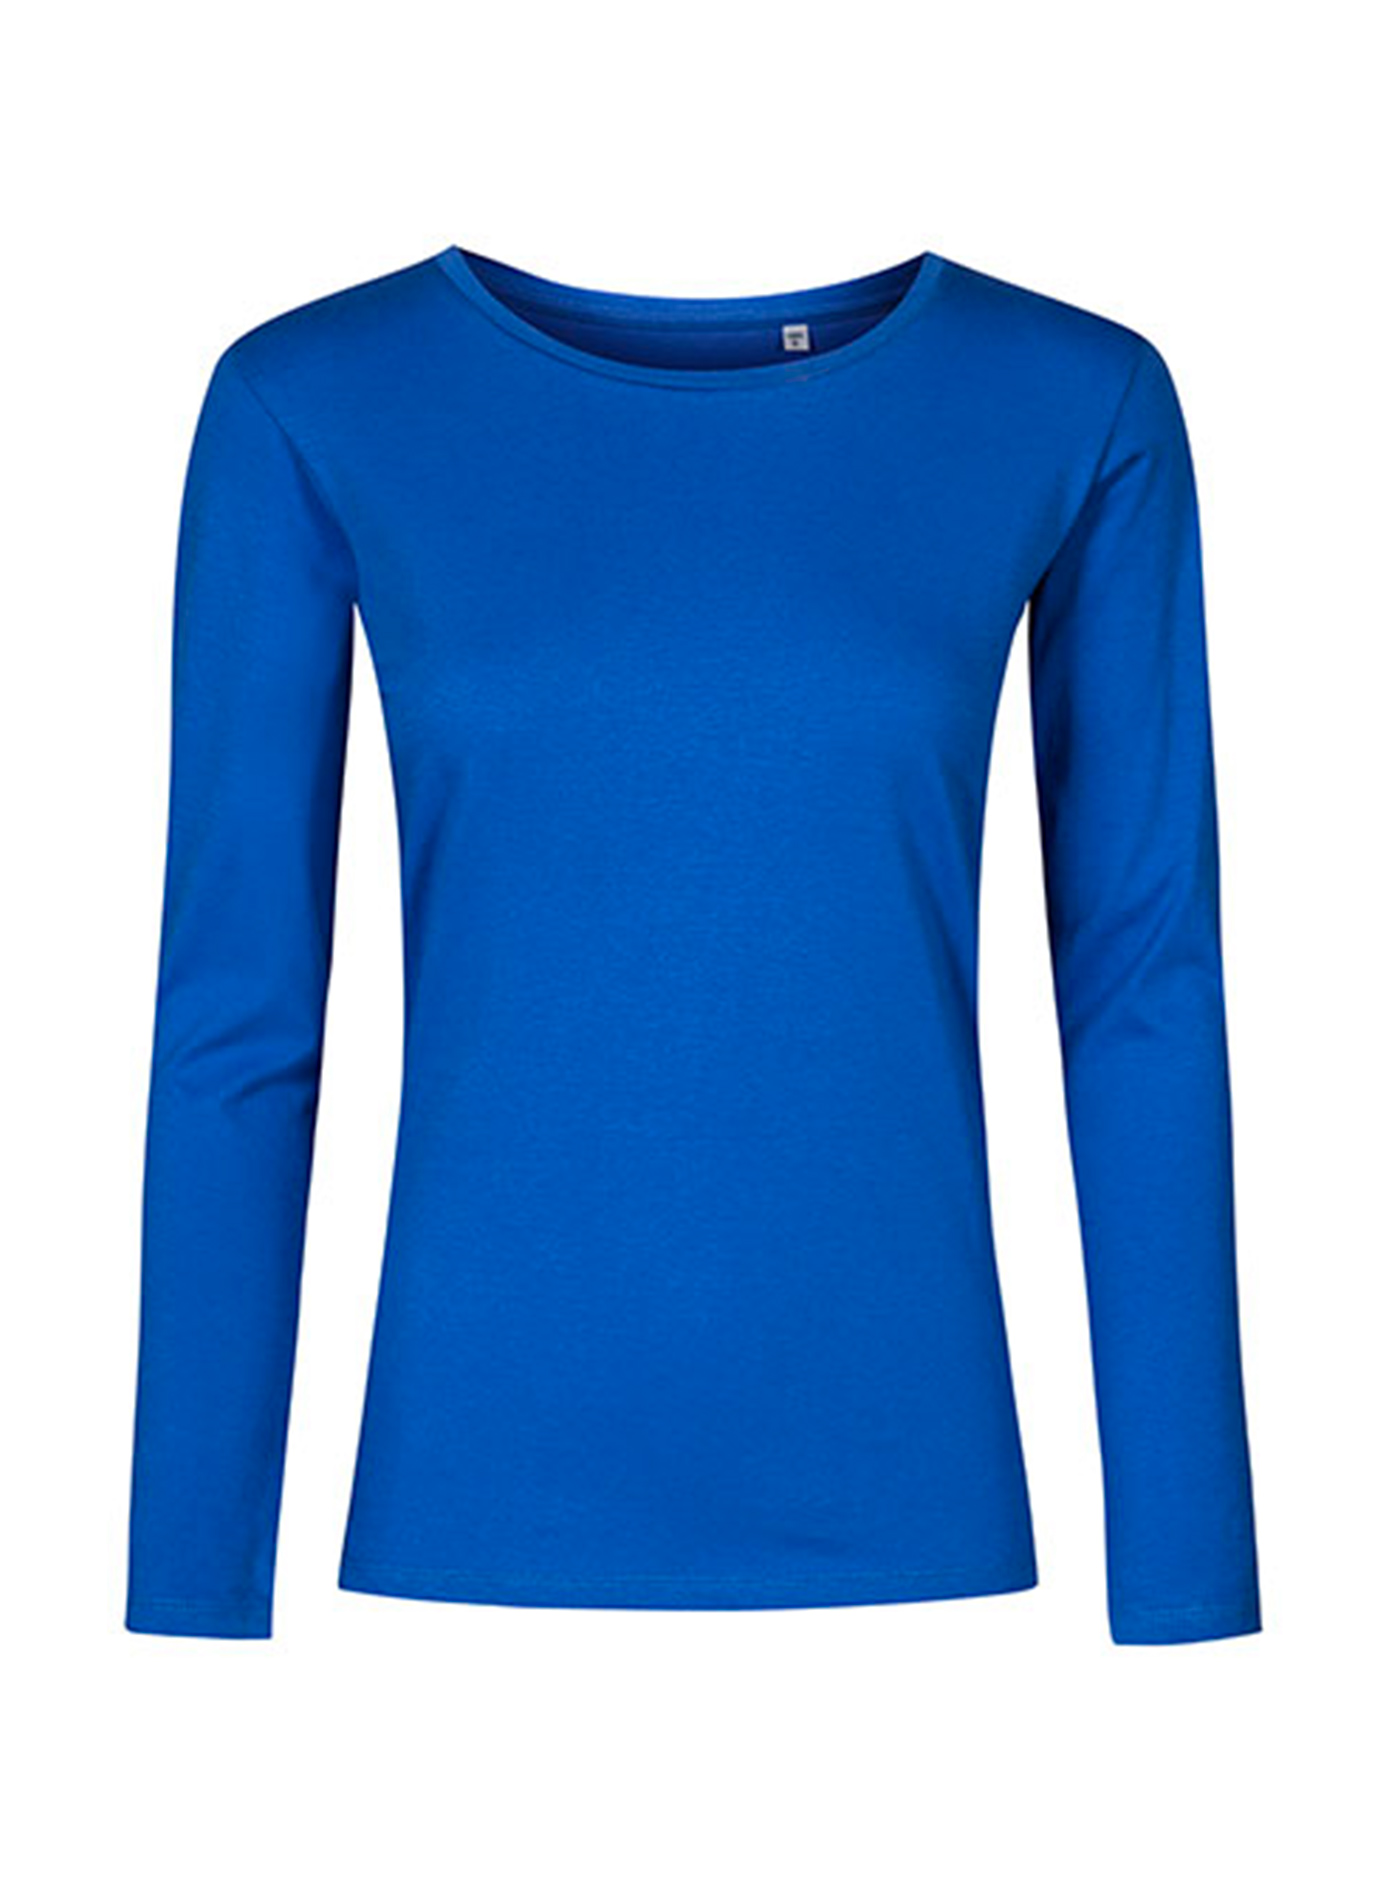 Dámské tričko s dlouhým rukávem s kulatým výstřihem Promodoro - Kobaltově modrá XS